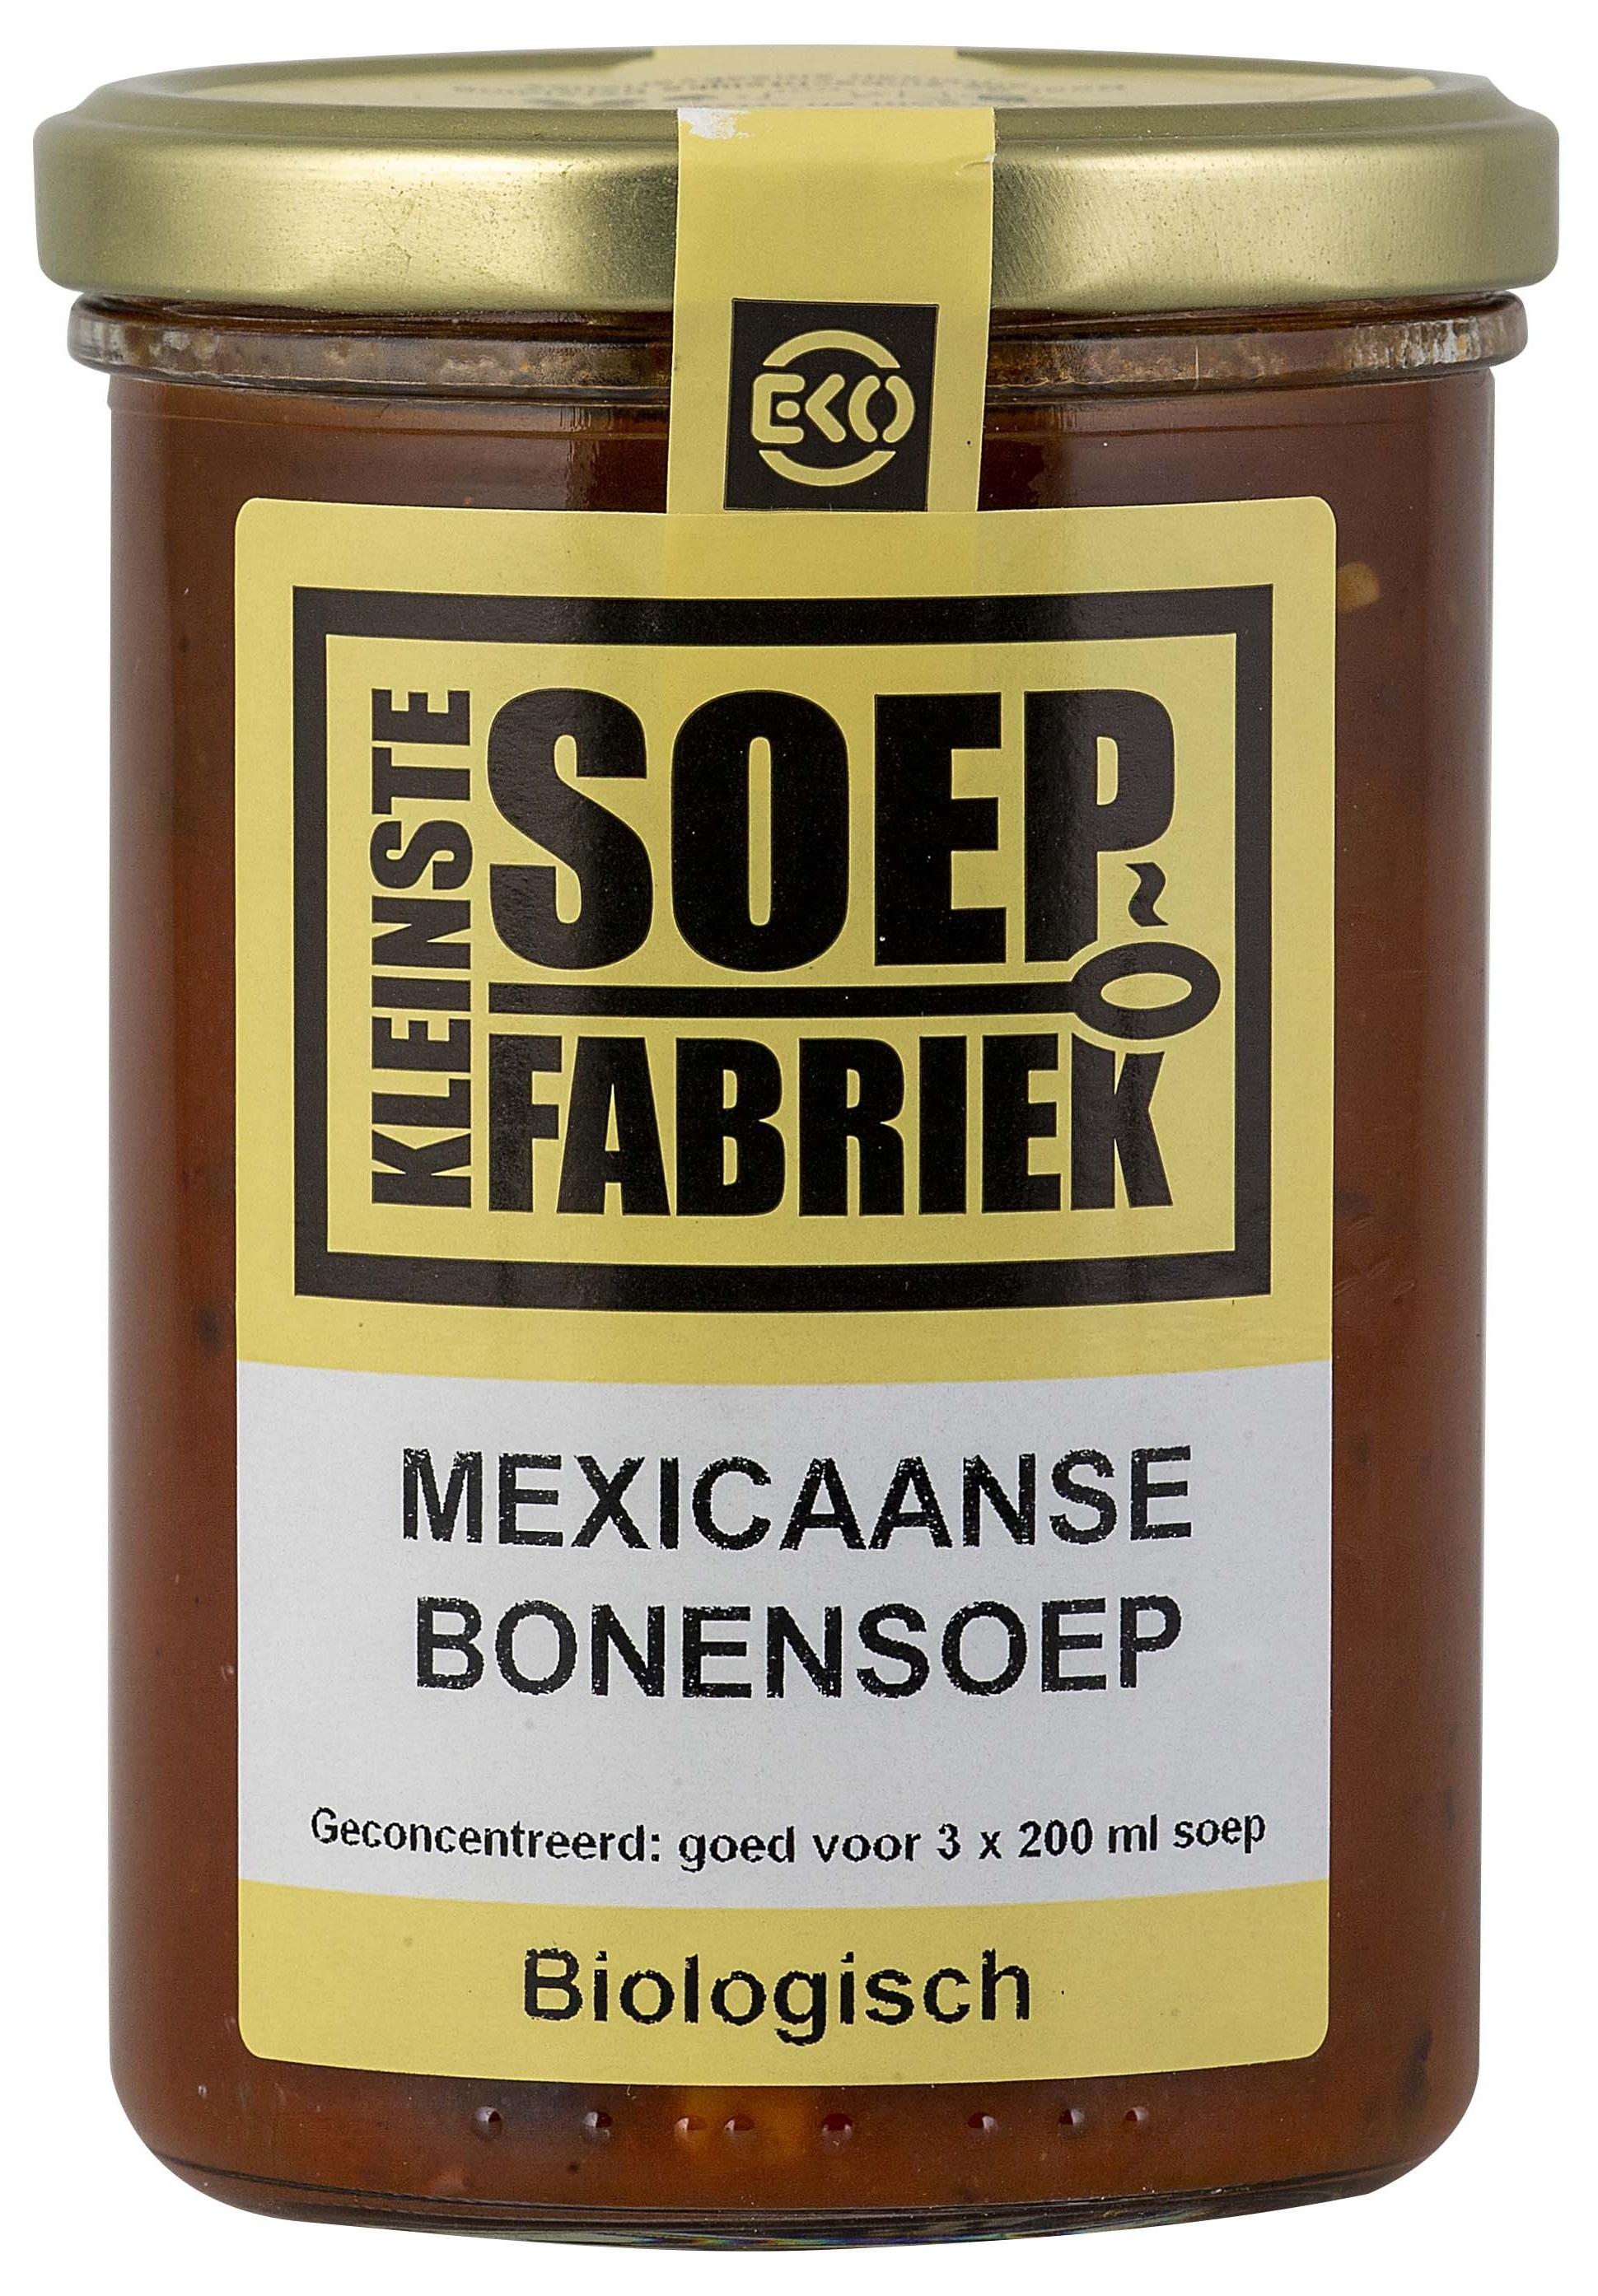 Mexicaanse bonensoep van Kleinstesoepfabriek, 6 x 400 ml